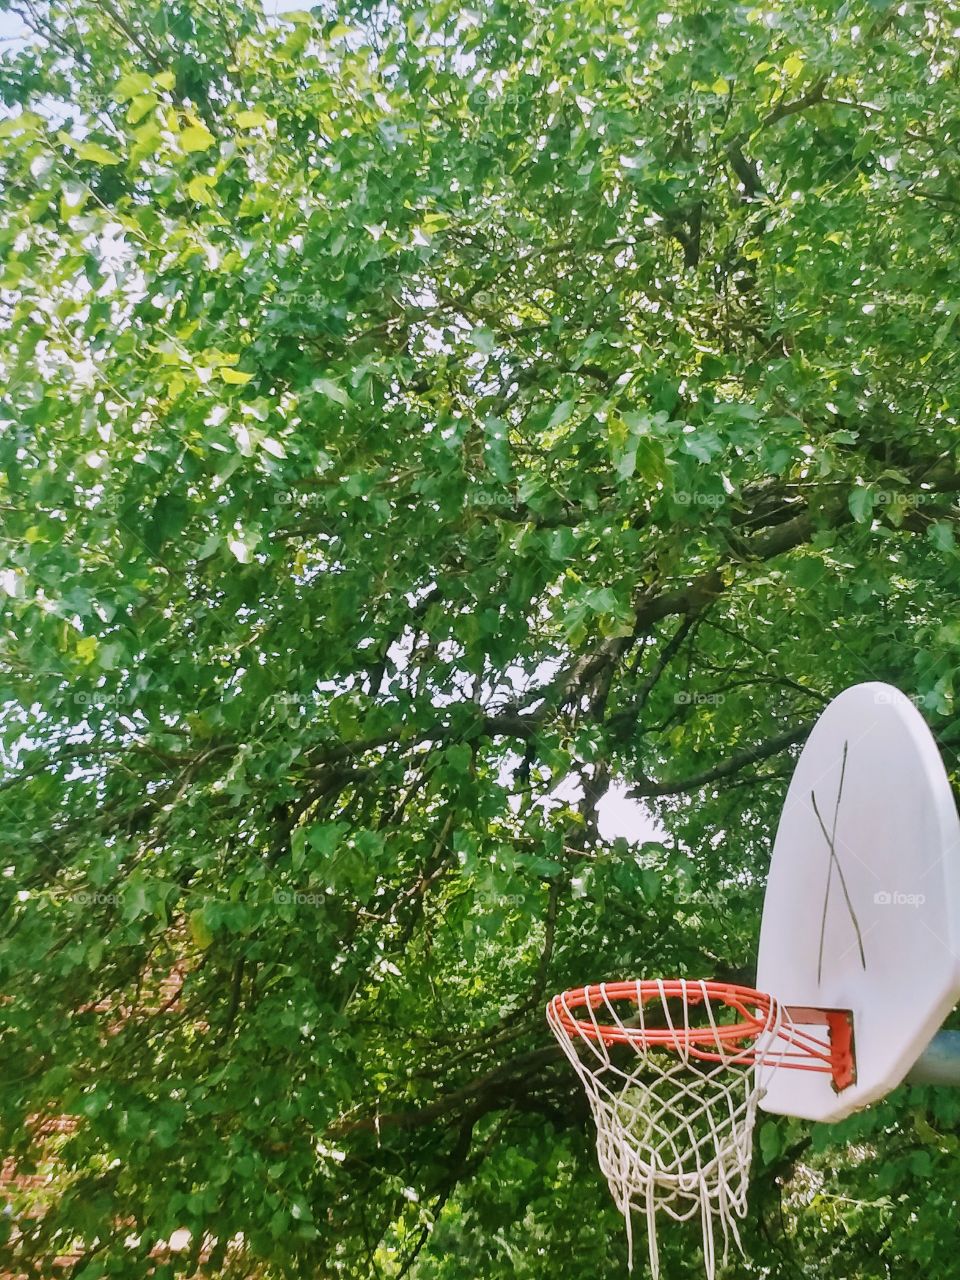 basketball in the sun